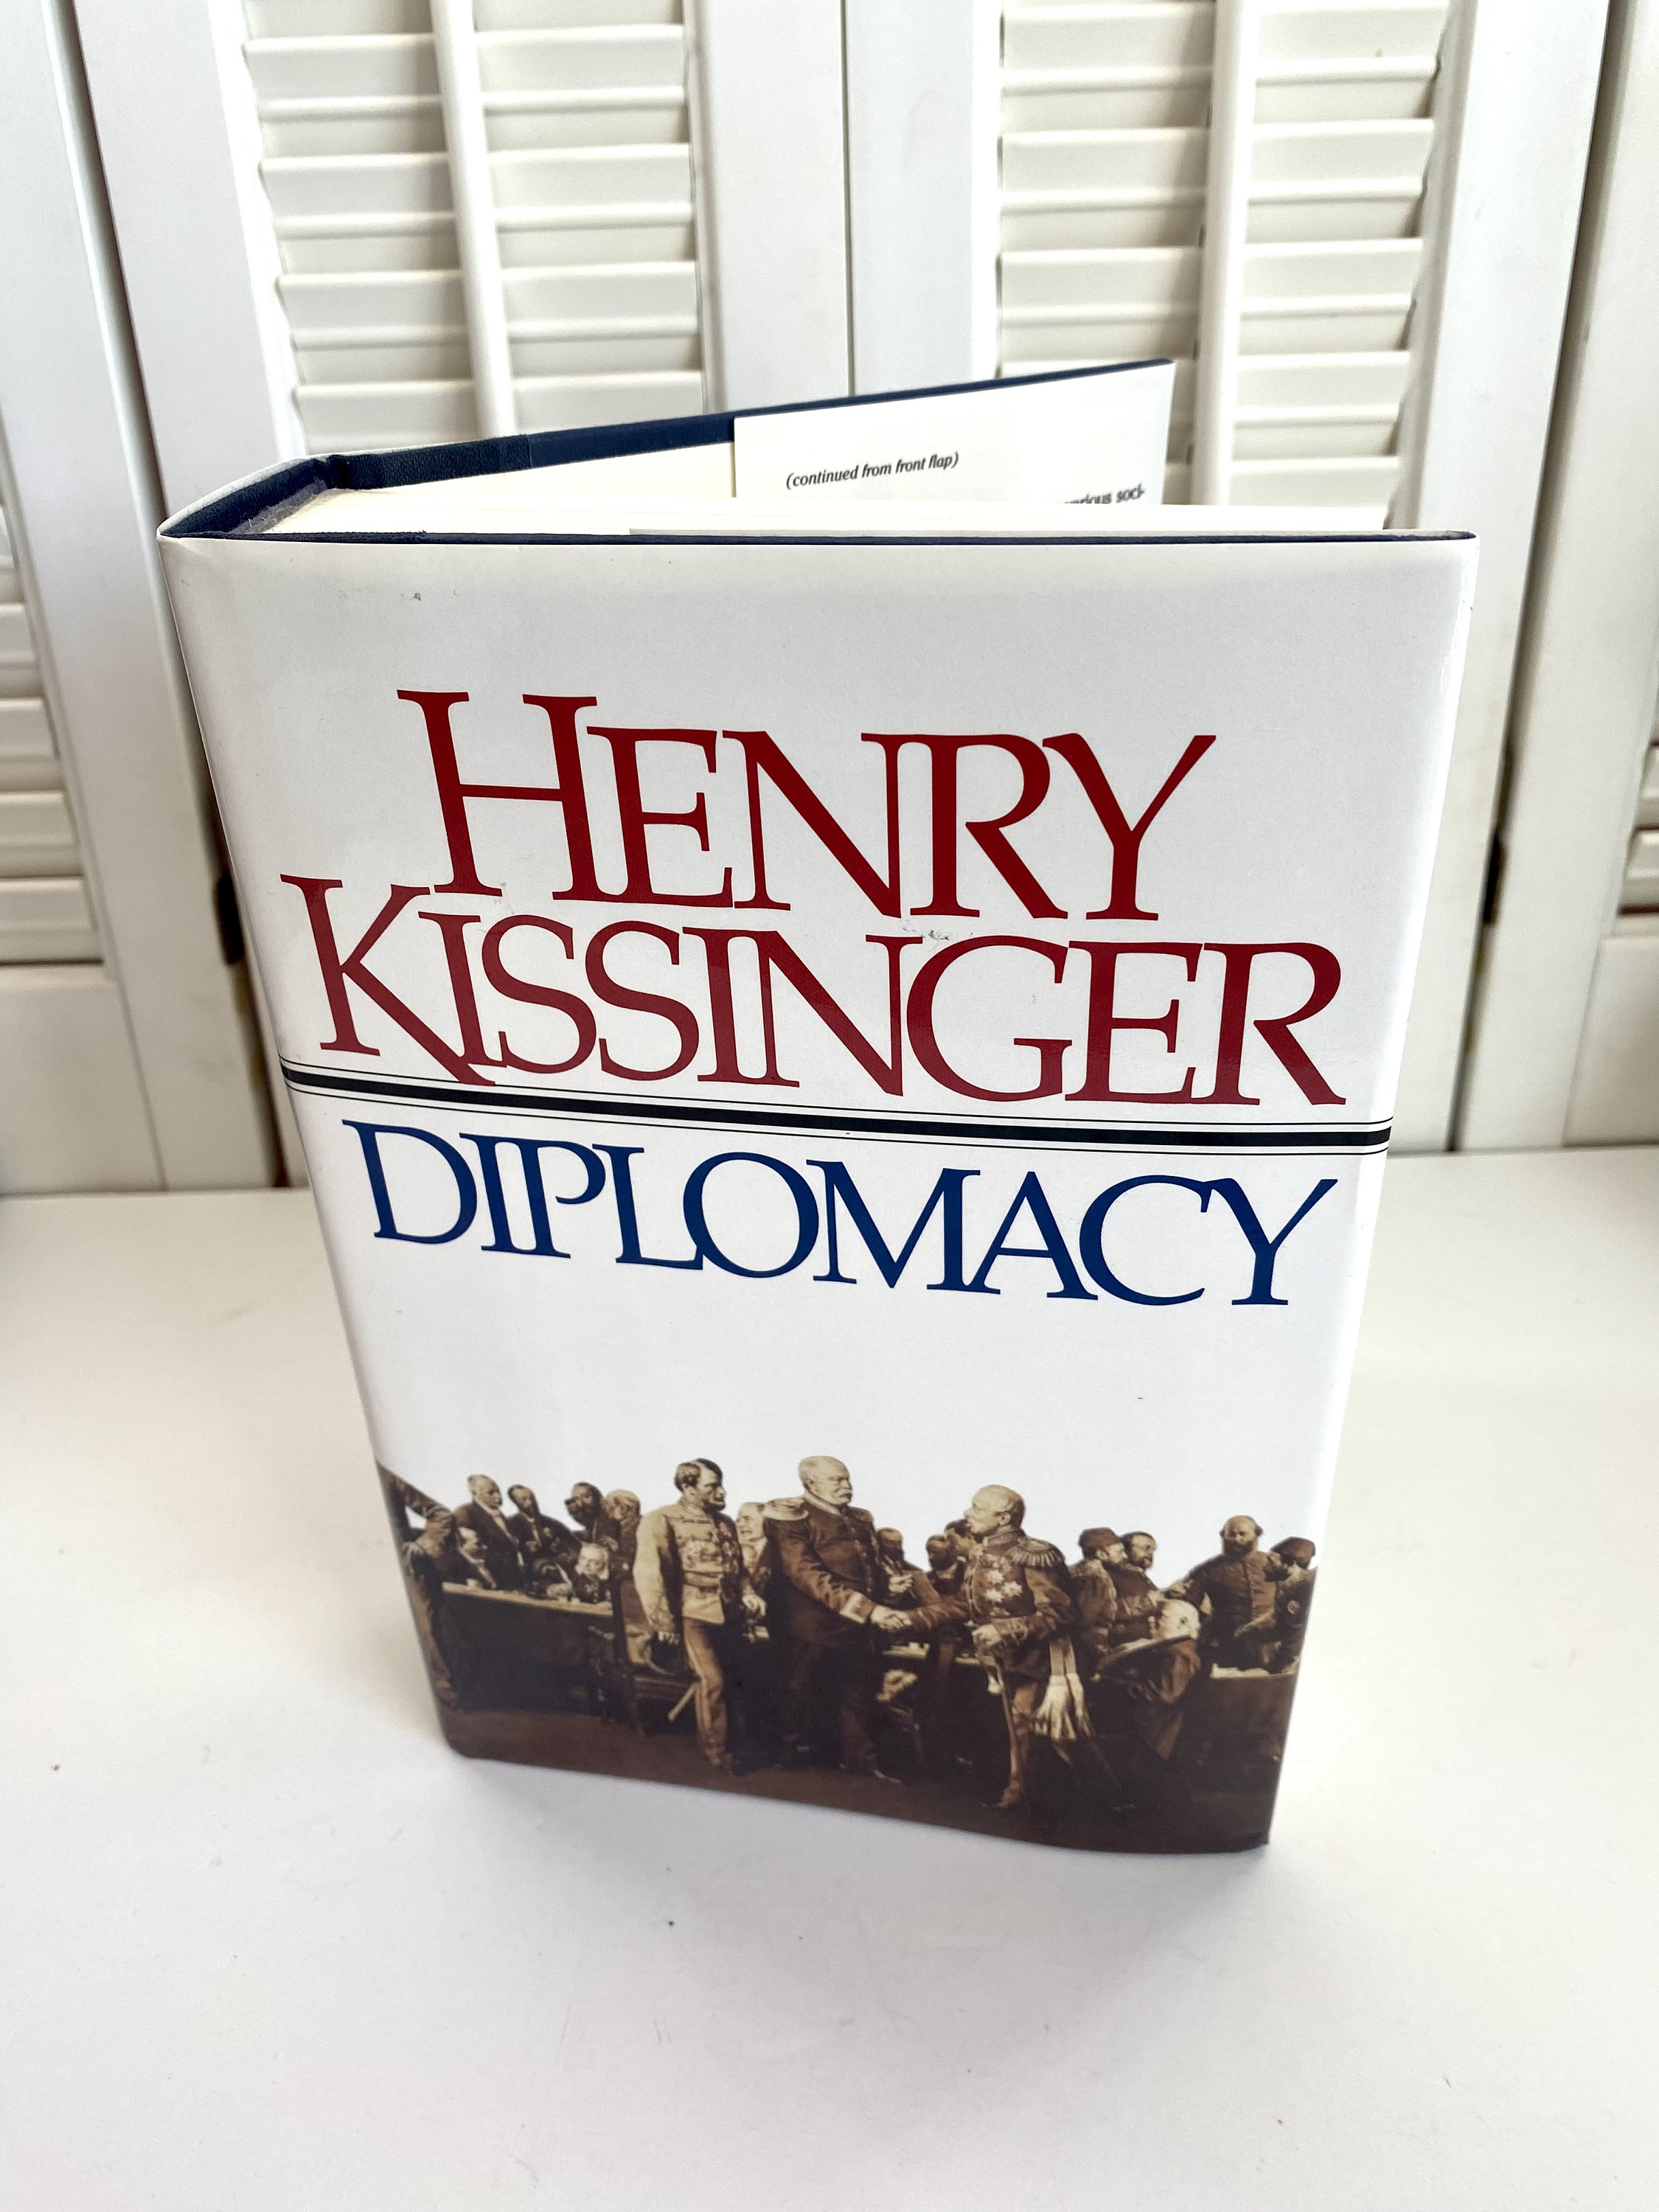 henry kissinger books